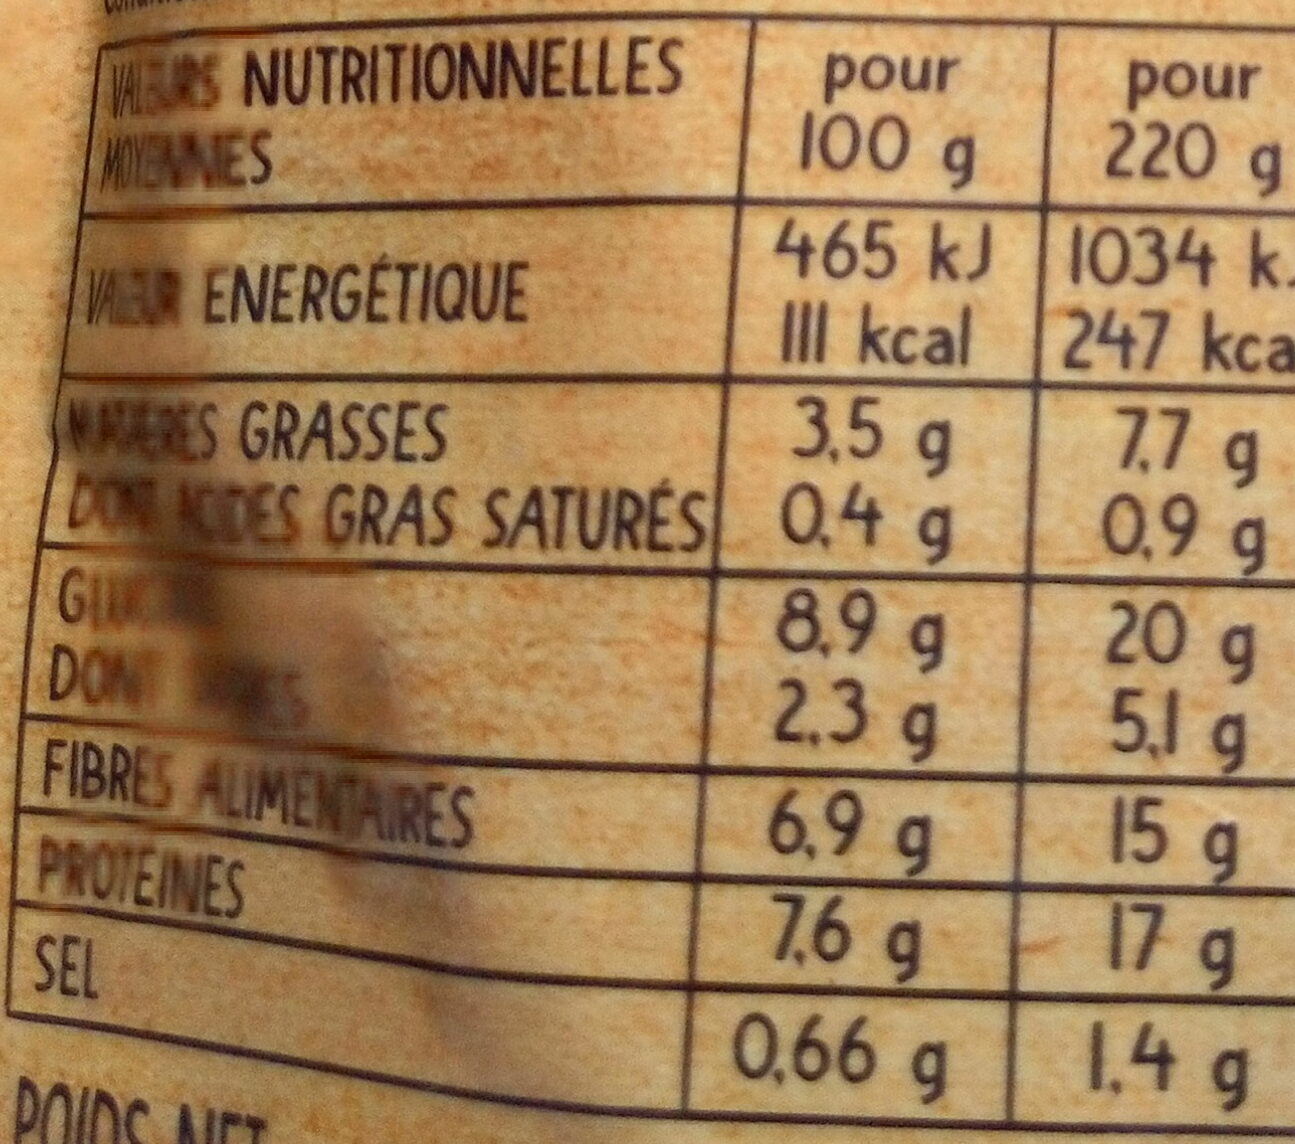 Haricots rouges, Blé, Soja façon Chili - Tableau nutritionnel